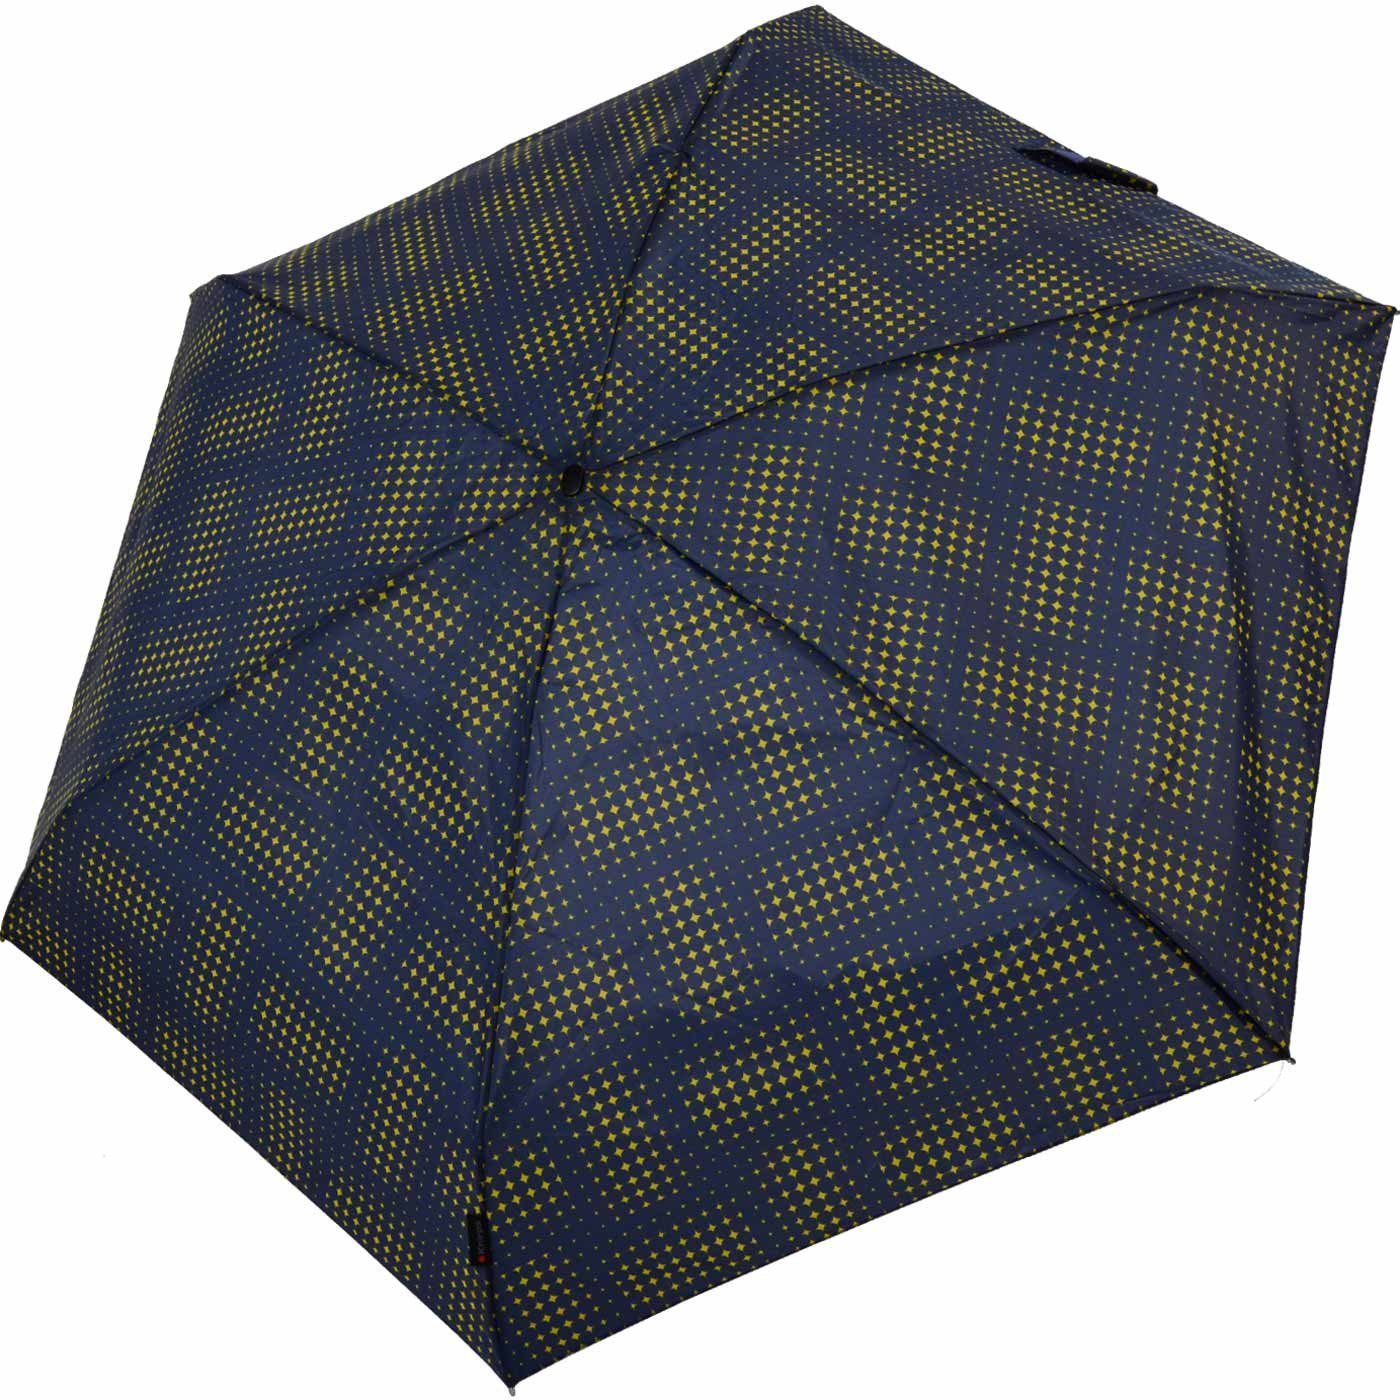 Taschenregenschirm Knirps® kompakt jede navy-blau-gelb leicht Begleiter, klein der zuverlässige - in stars, Mini-Schirm der Travel passt Tasche